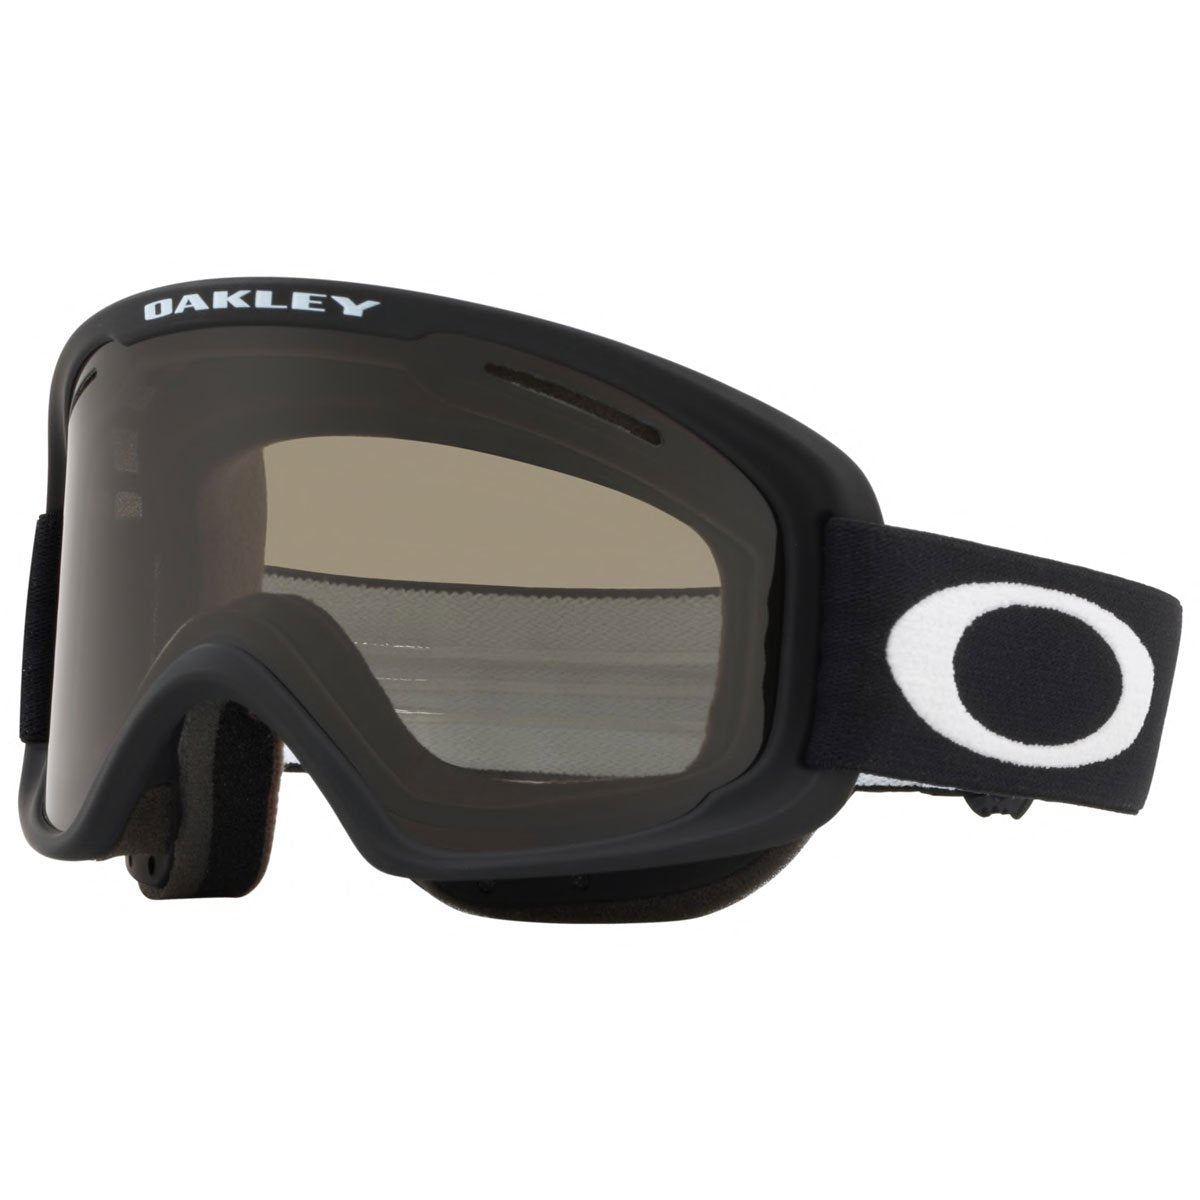 Oakley O-frame Pro Snowboard Goggles - Black/Dark Grey MD – Daddies Shop